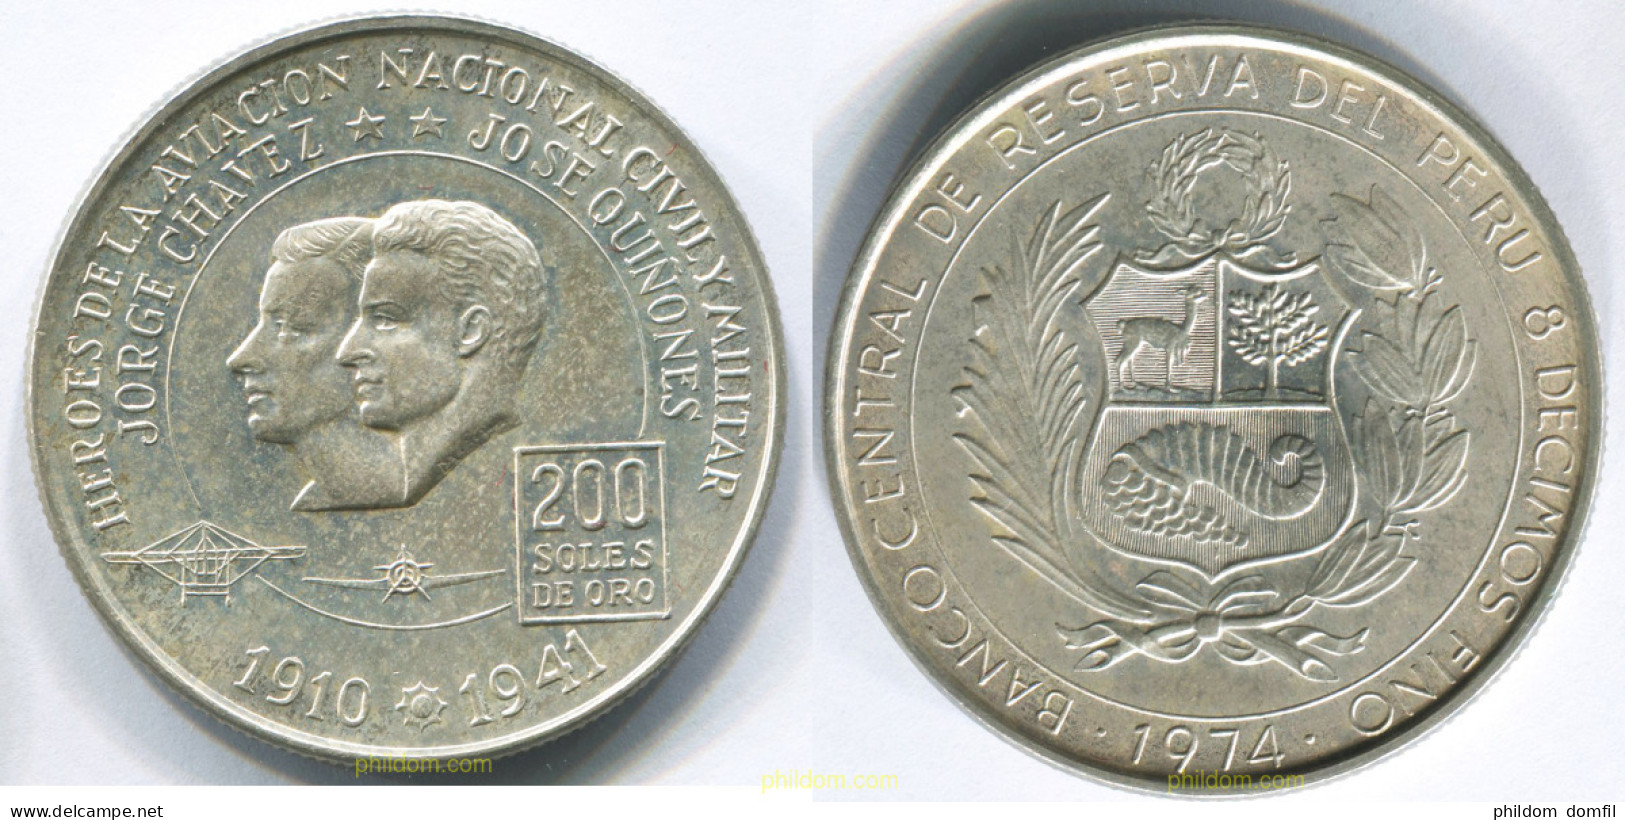 3034 PERU 1974 PERU 200 SOLES 1974 - Peru